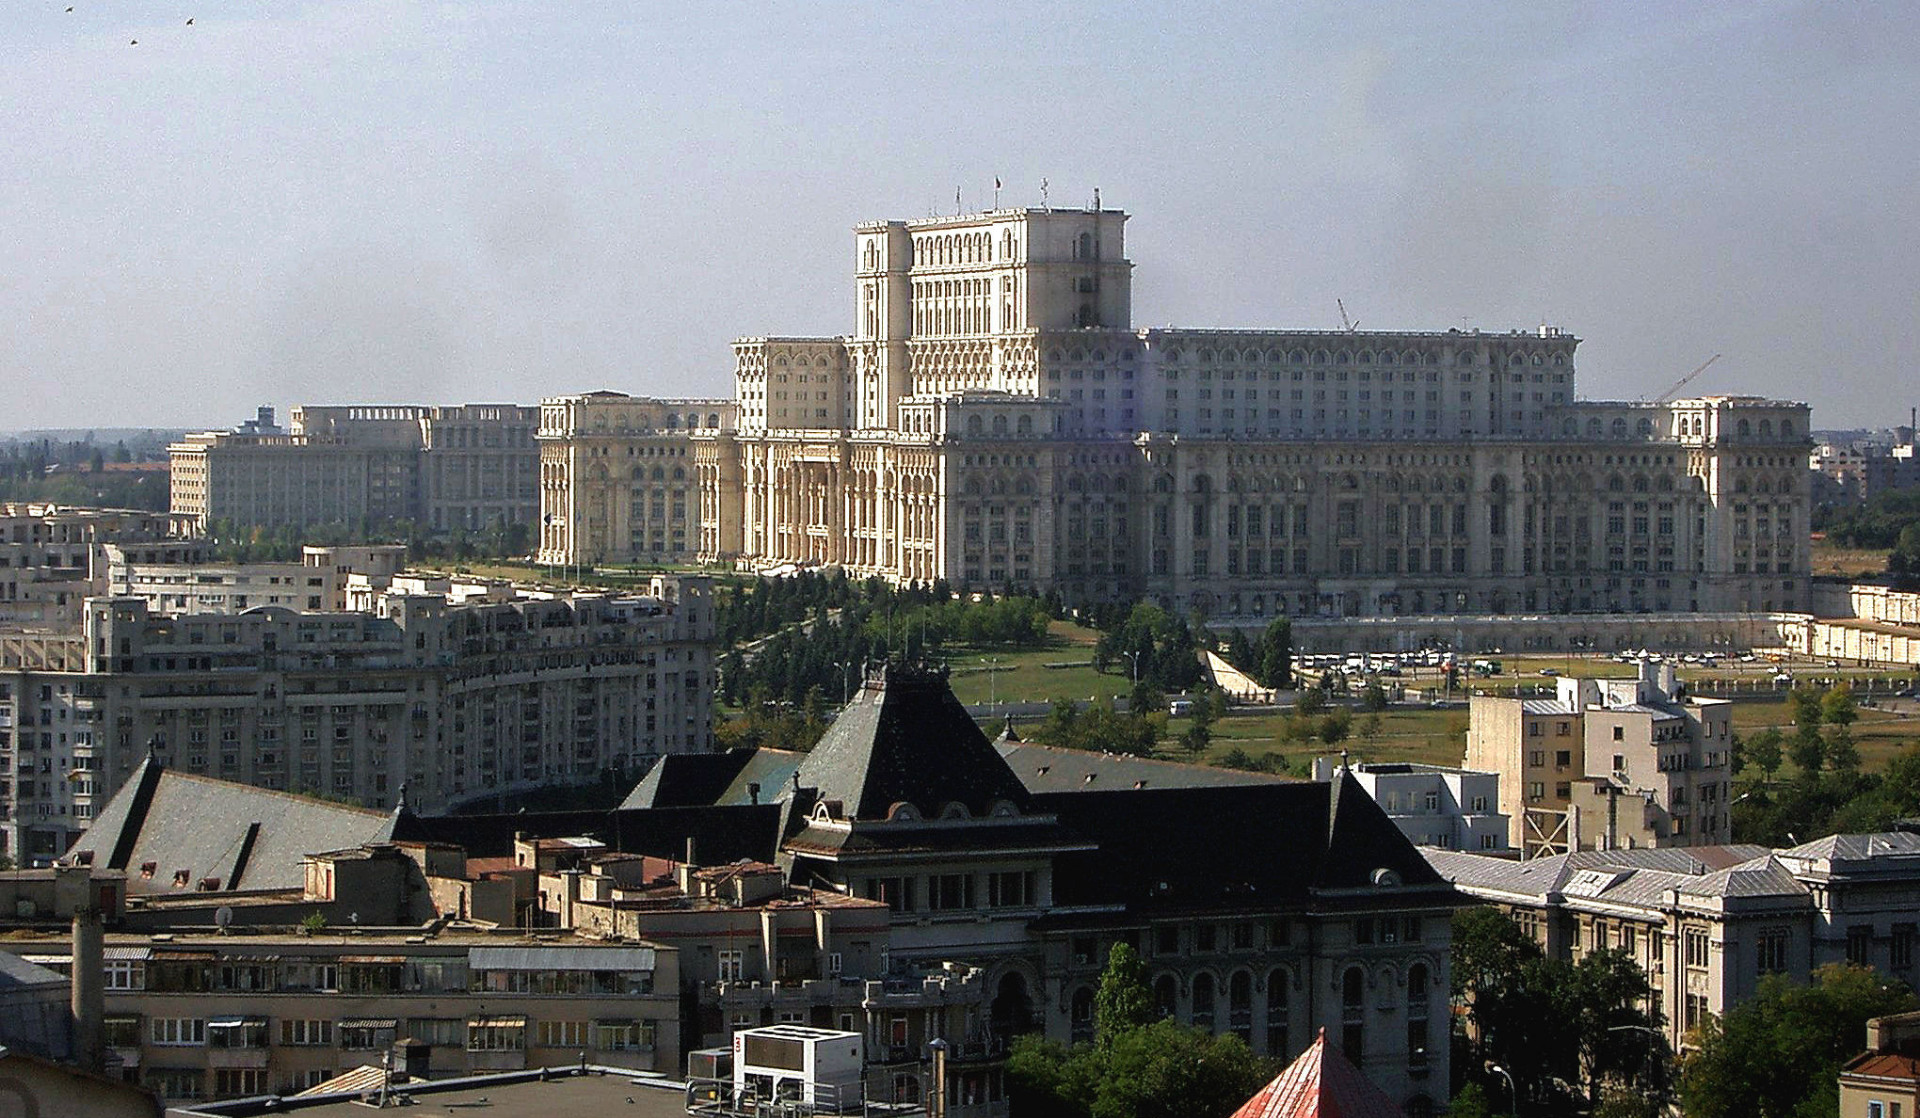 Palác ľudu, ktorý dal Ceaušescu postaviť v Bukurešti, je údajne druhou najväčšou administratívnou budovou na svete.